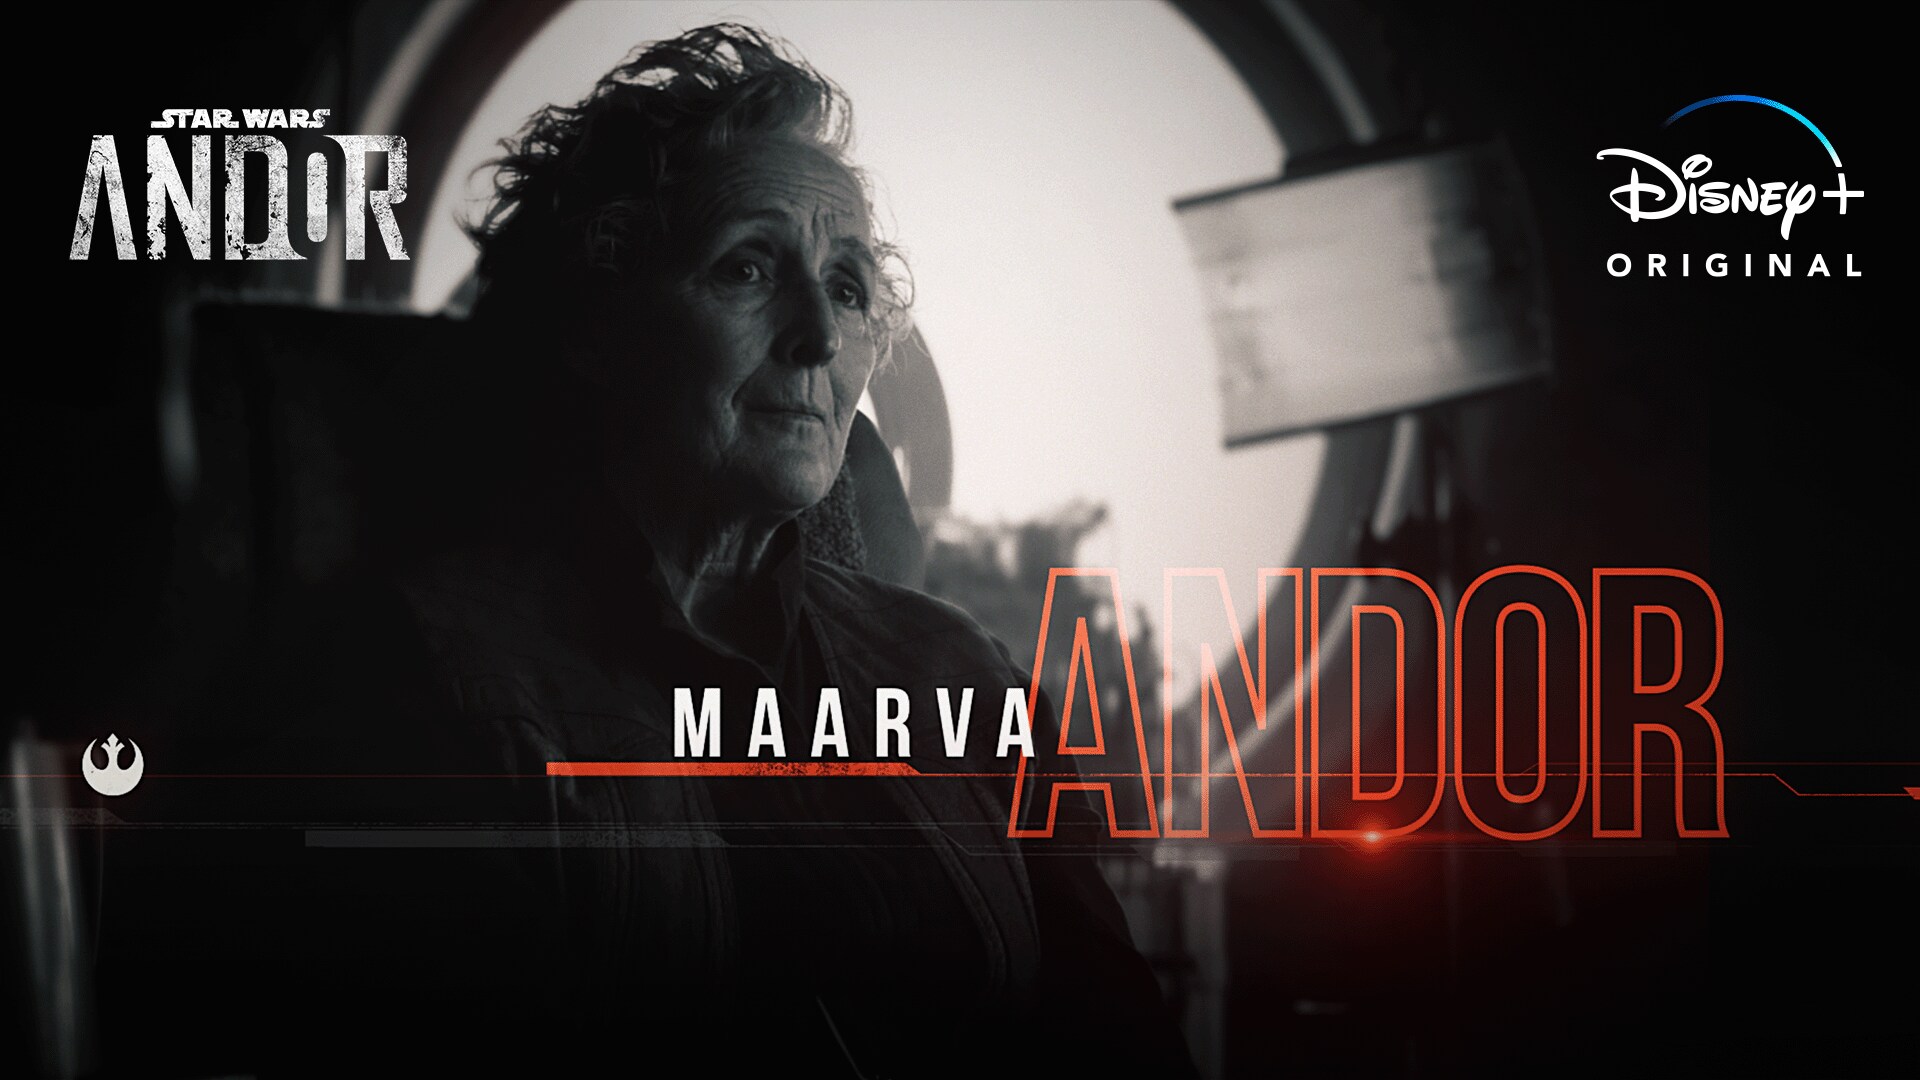 Inside Look at Maarva Andor | Andor